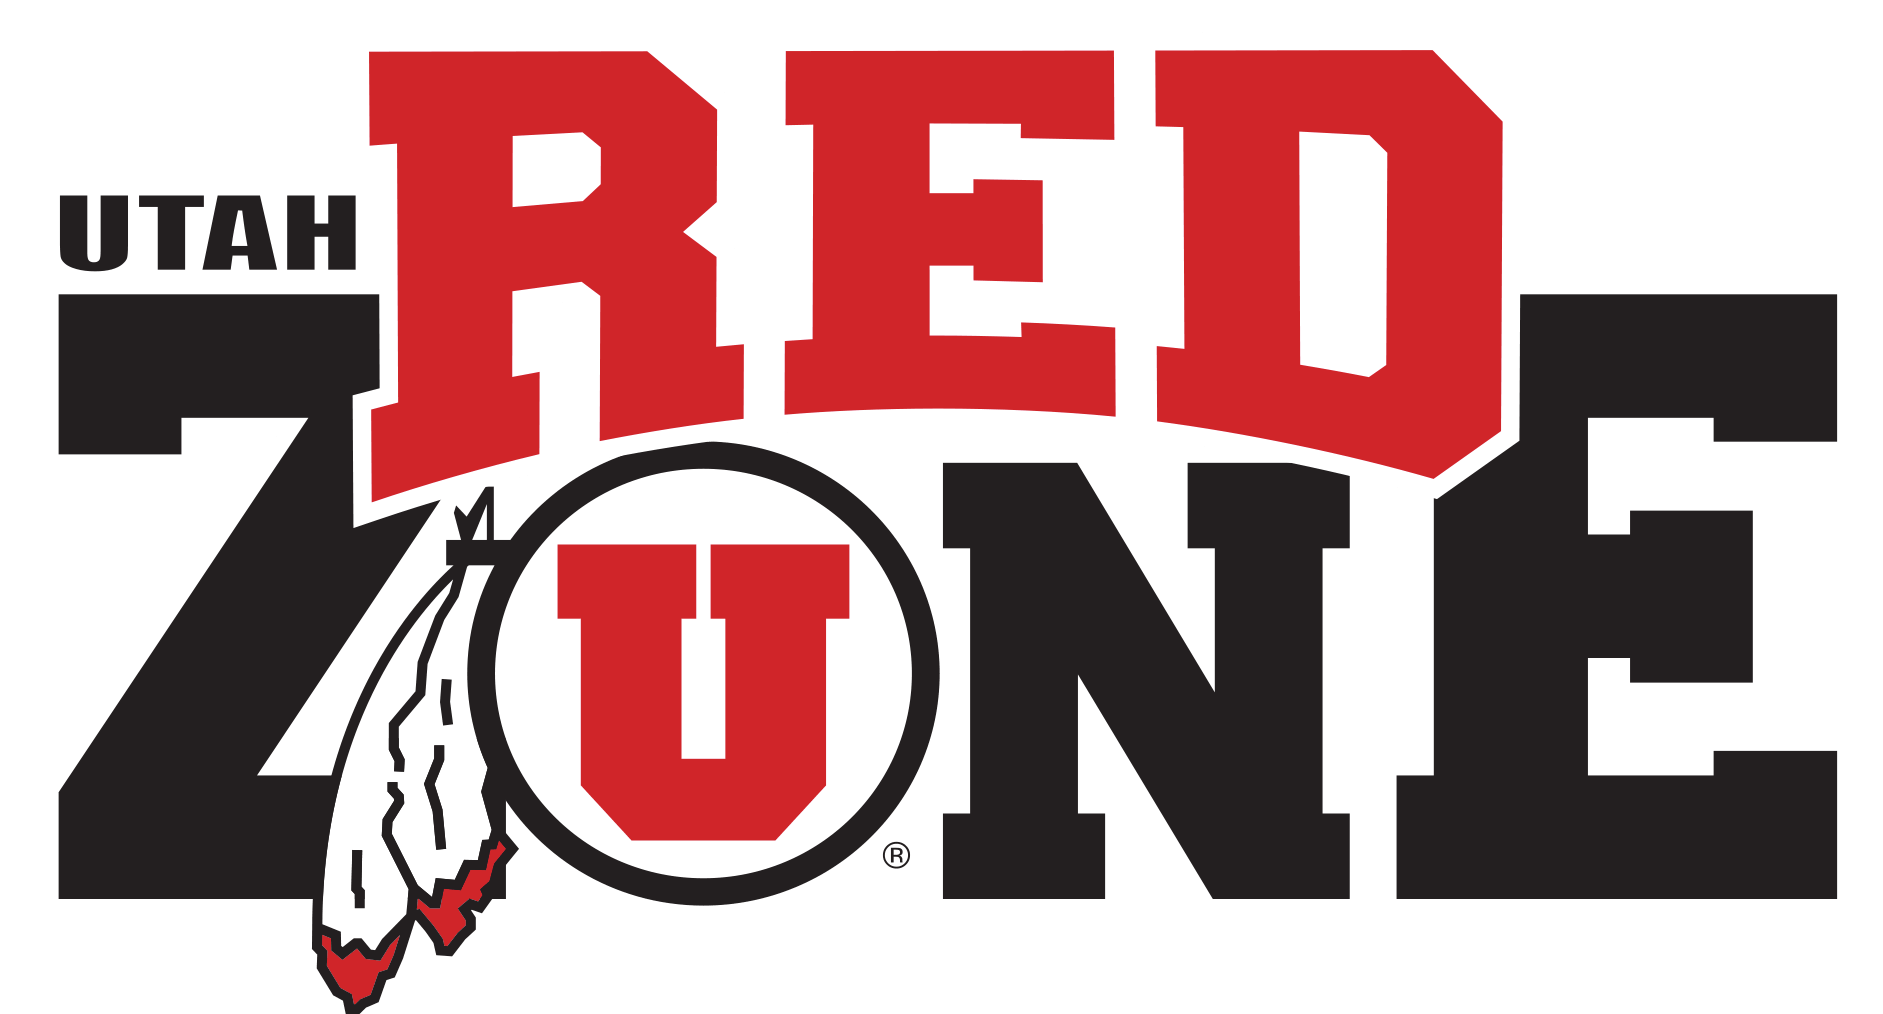 University of Utah Football Logo - Official Store University of Utah Utes Apparel